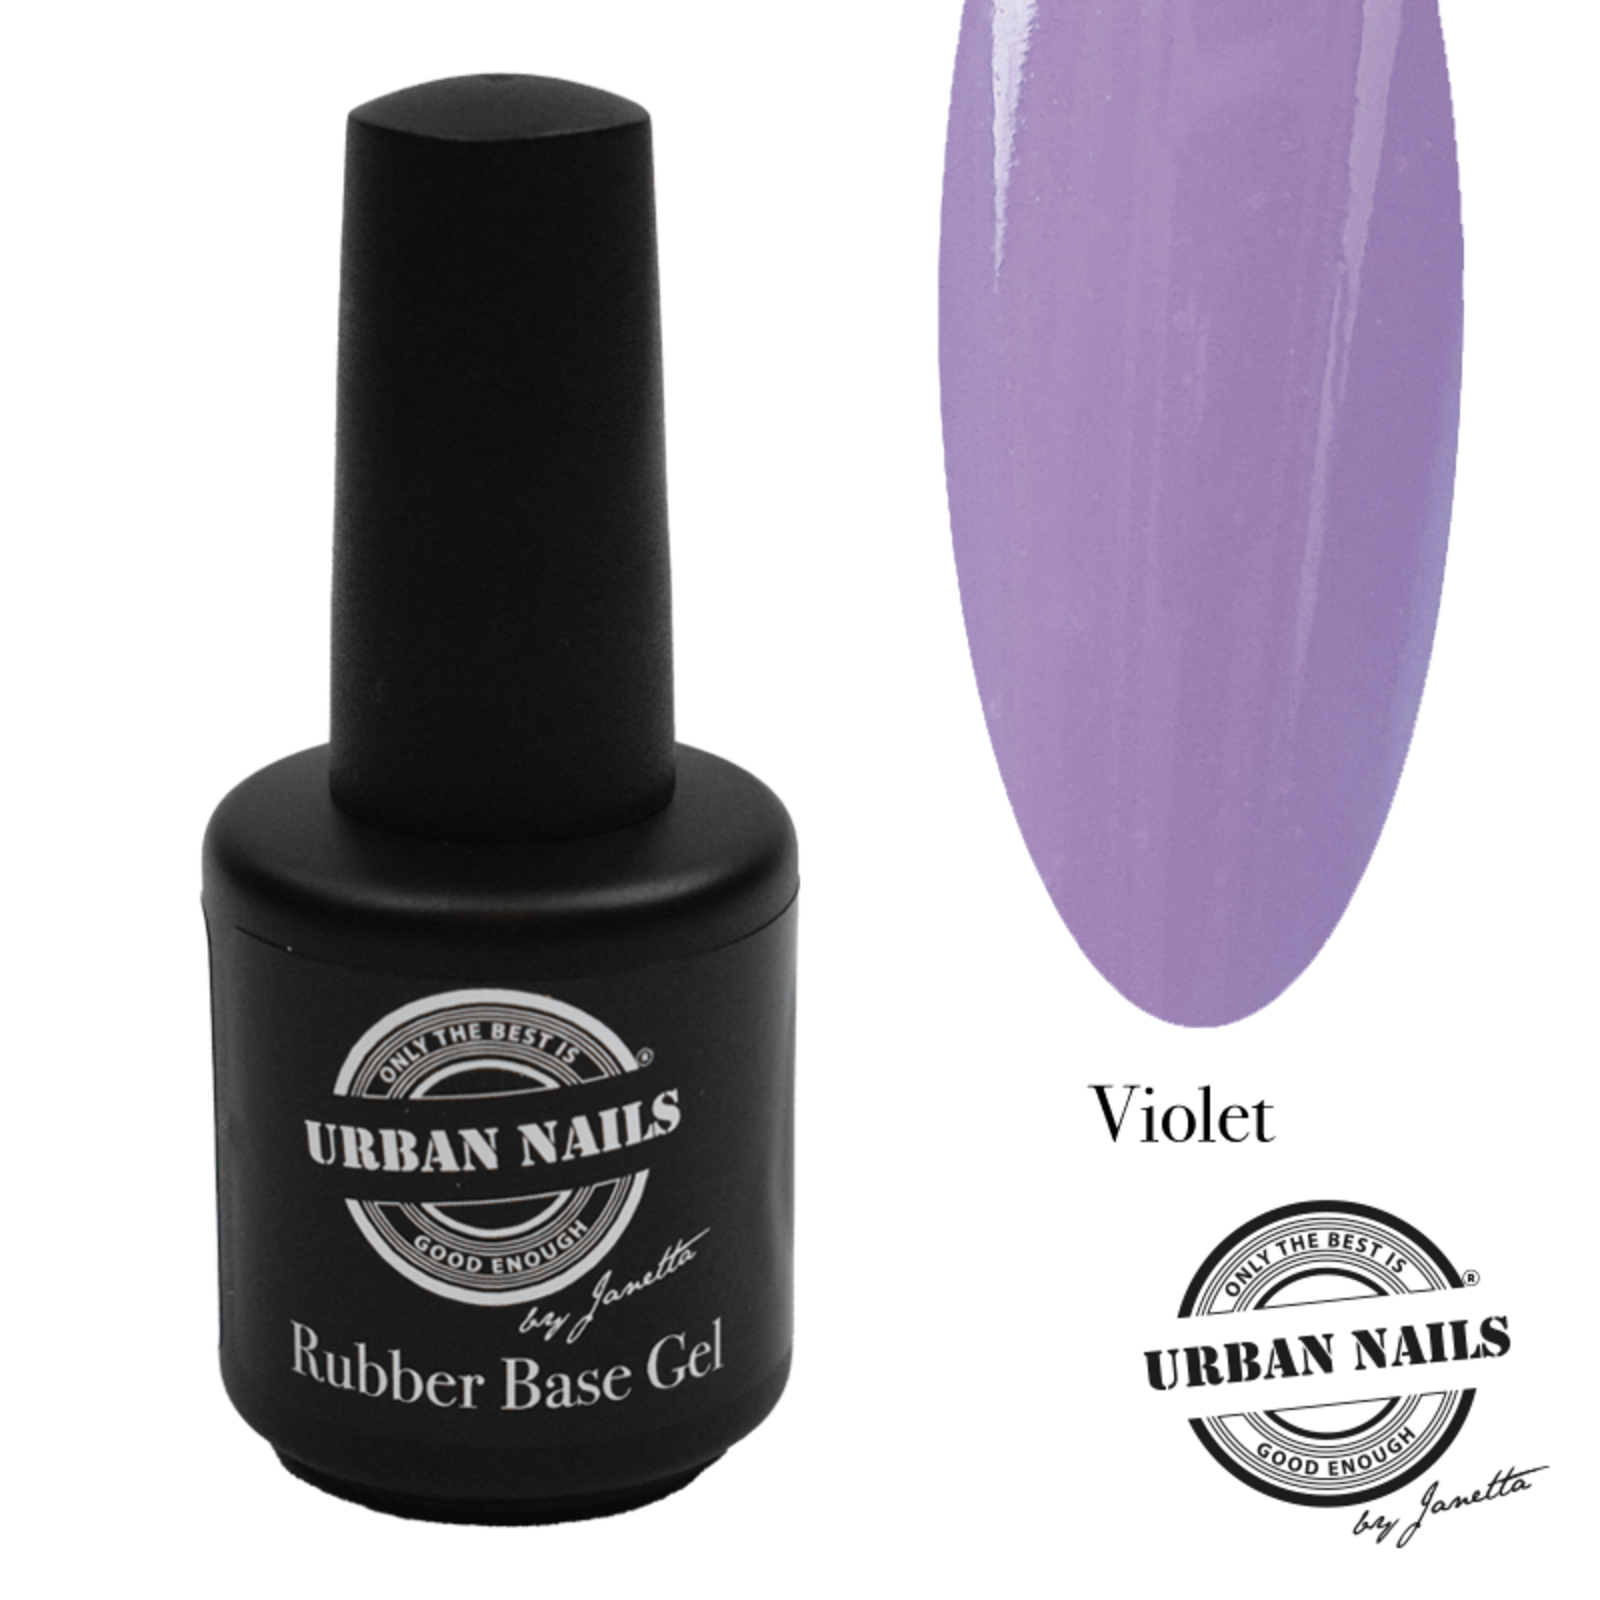 Urban nails Rubber Base Gel Violet